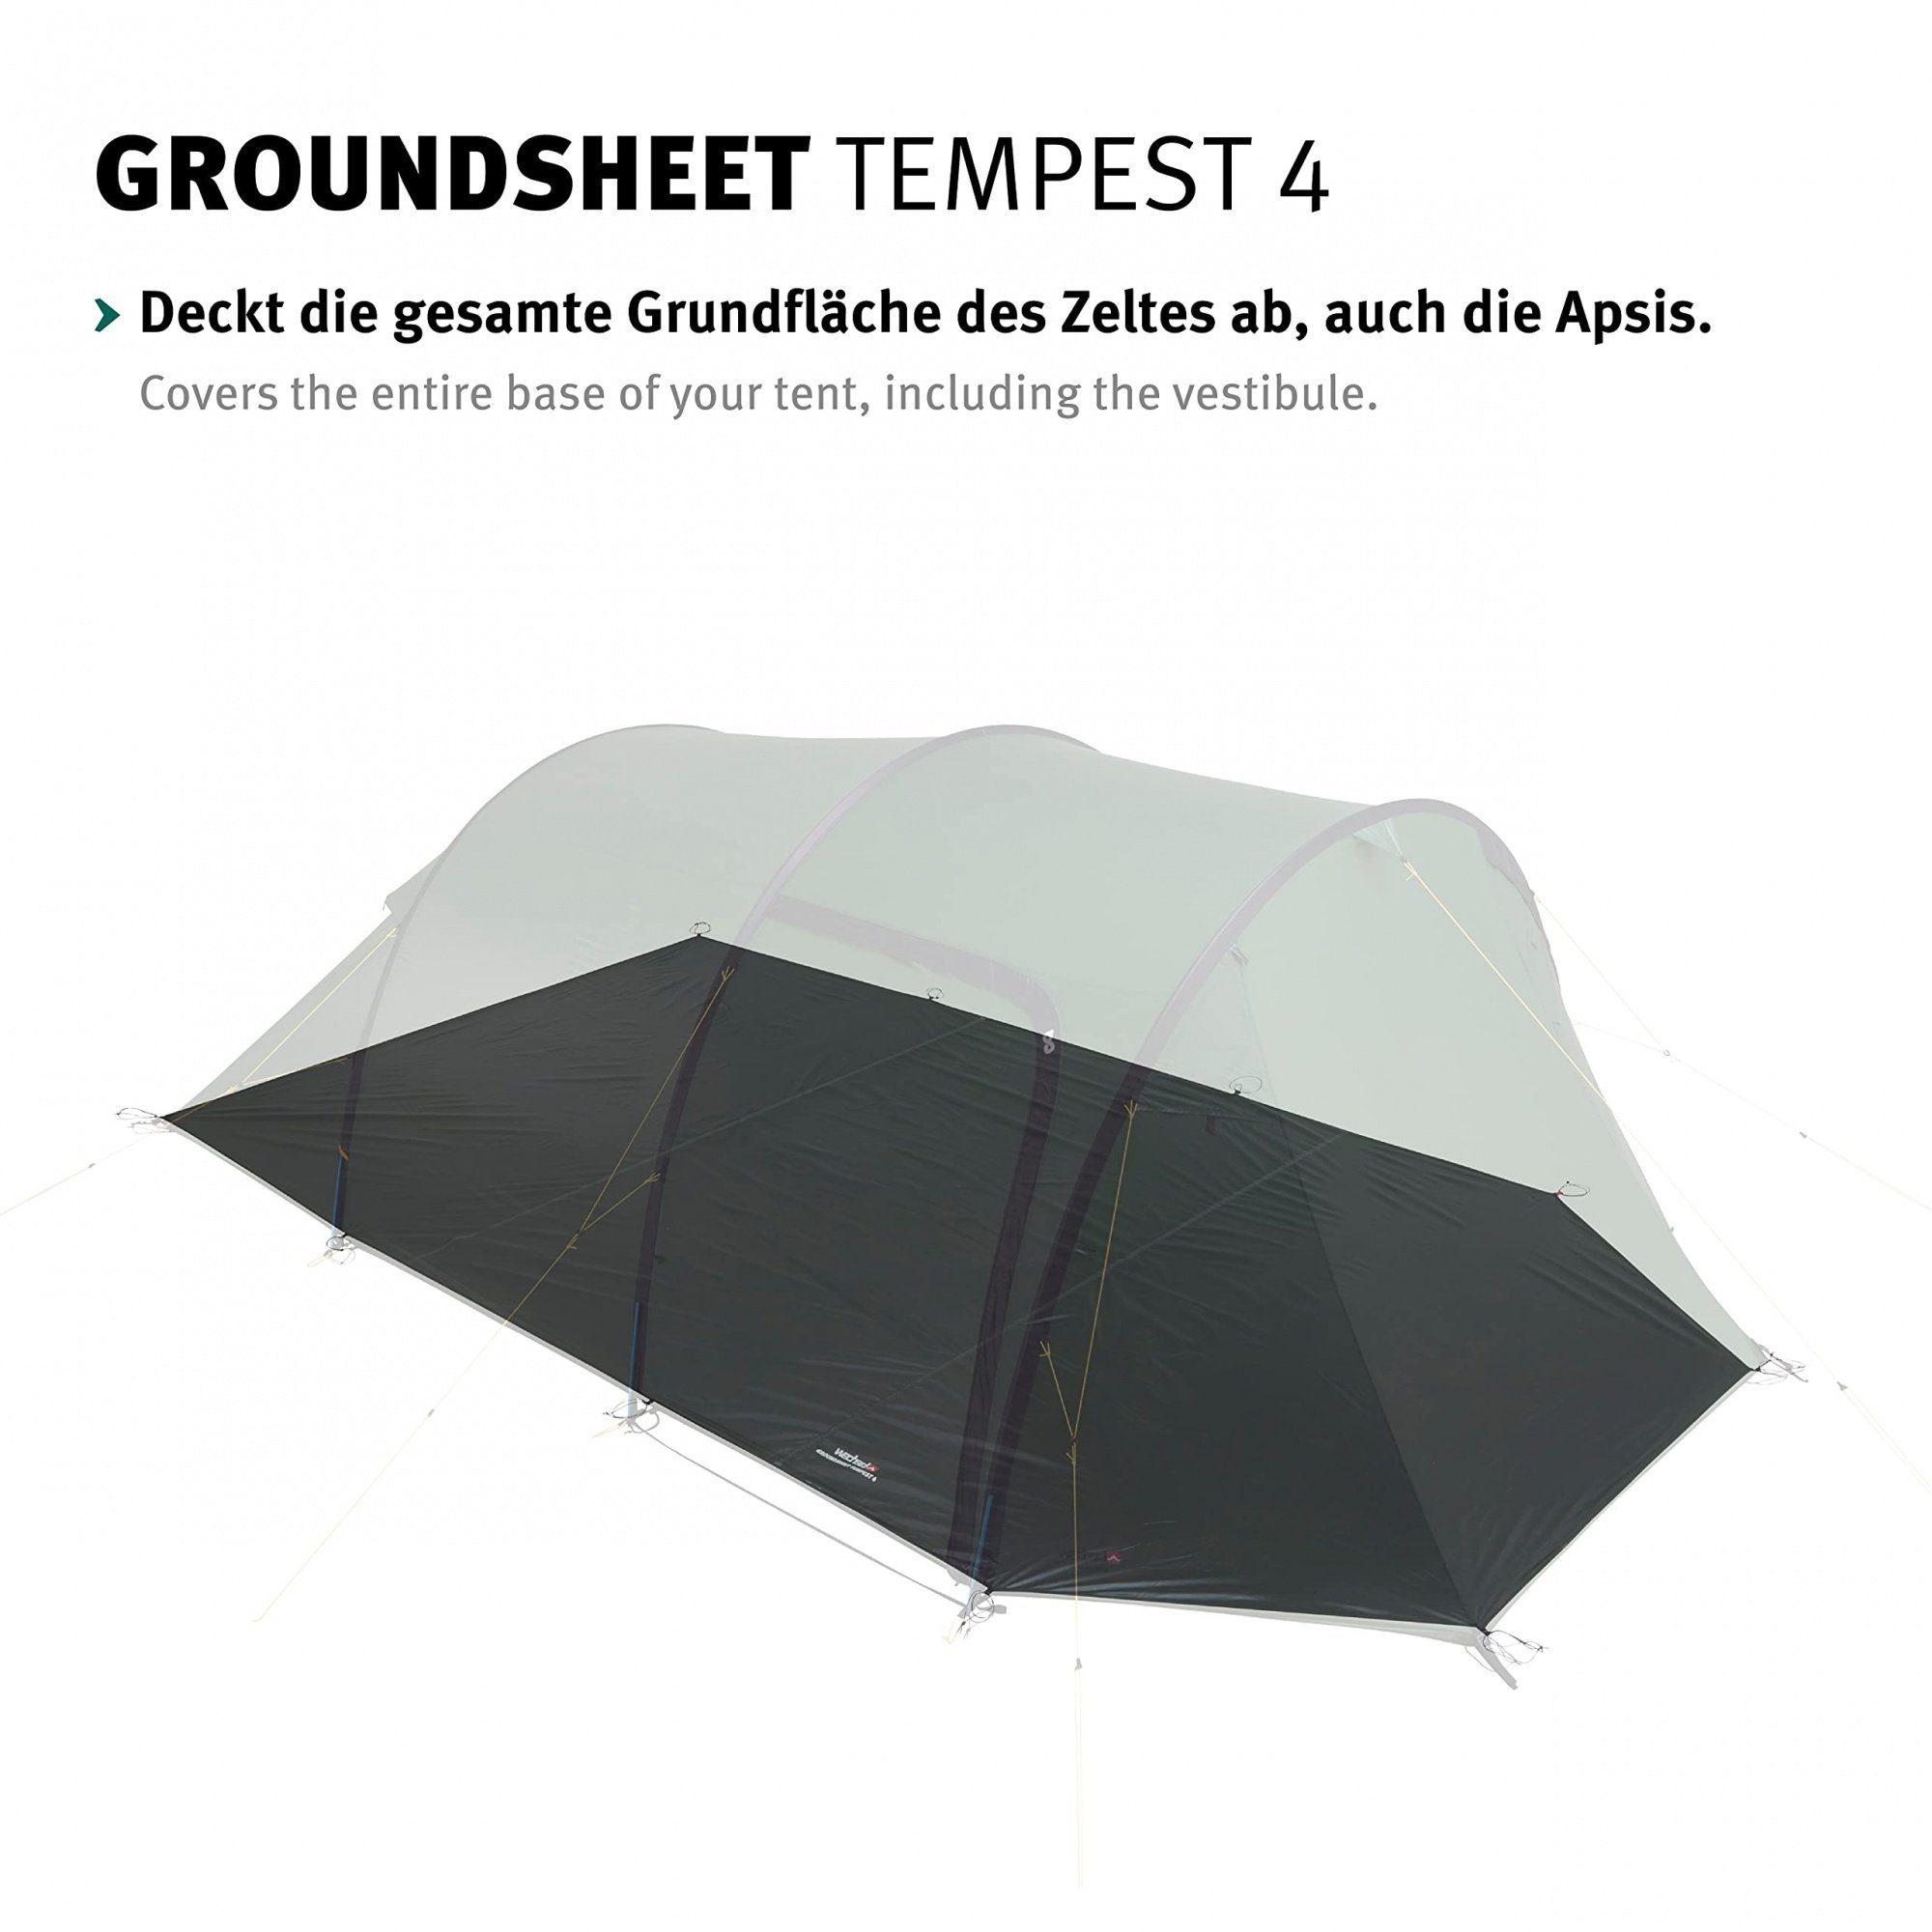 Groundsheet Tempest das Wechsel 4 Zeltunterlage Zelt für Tents